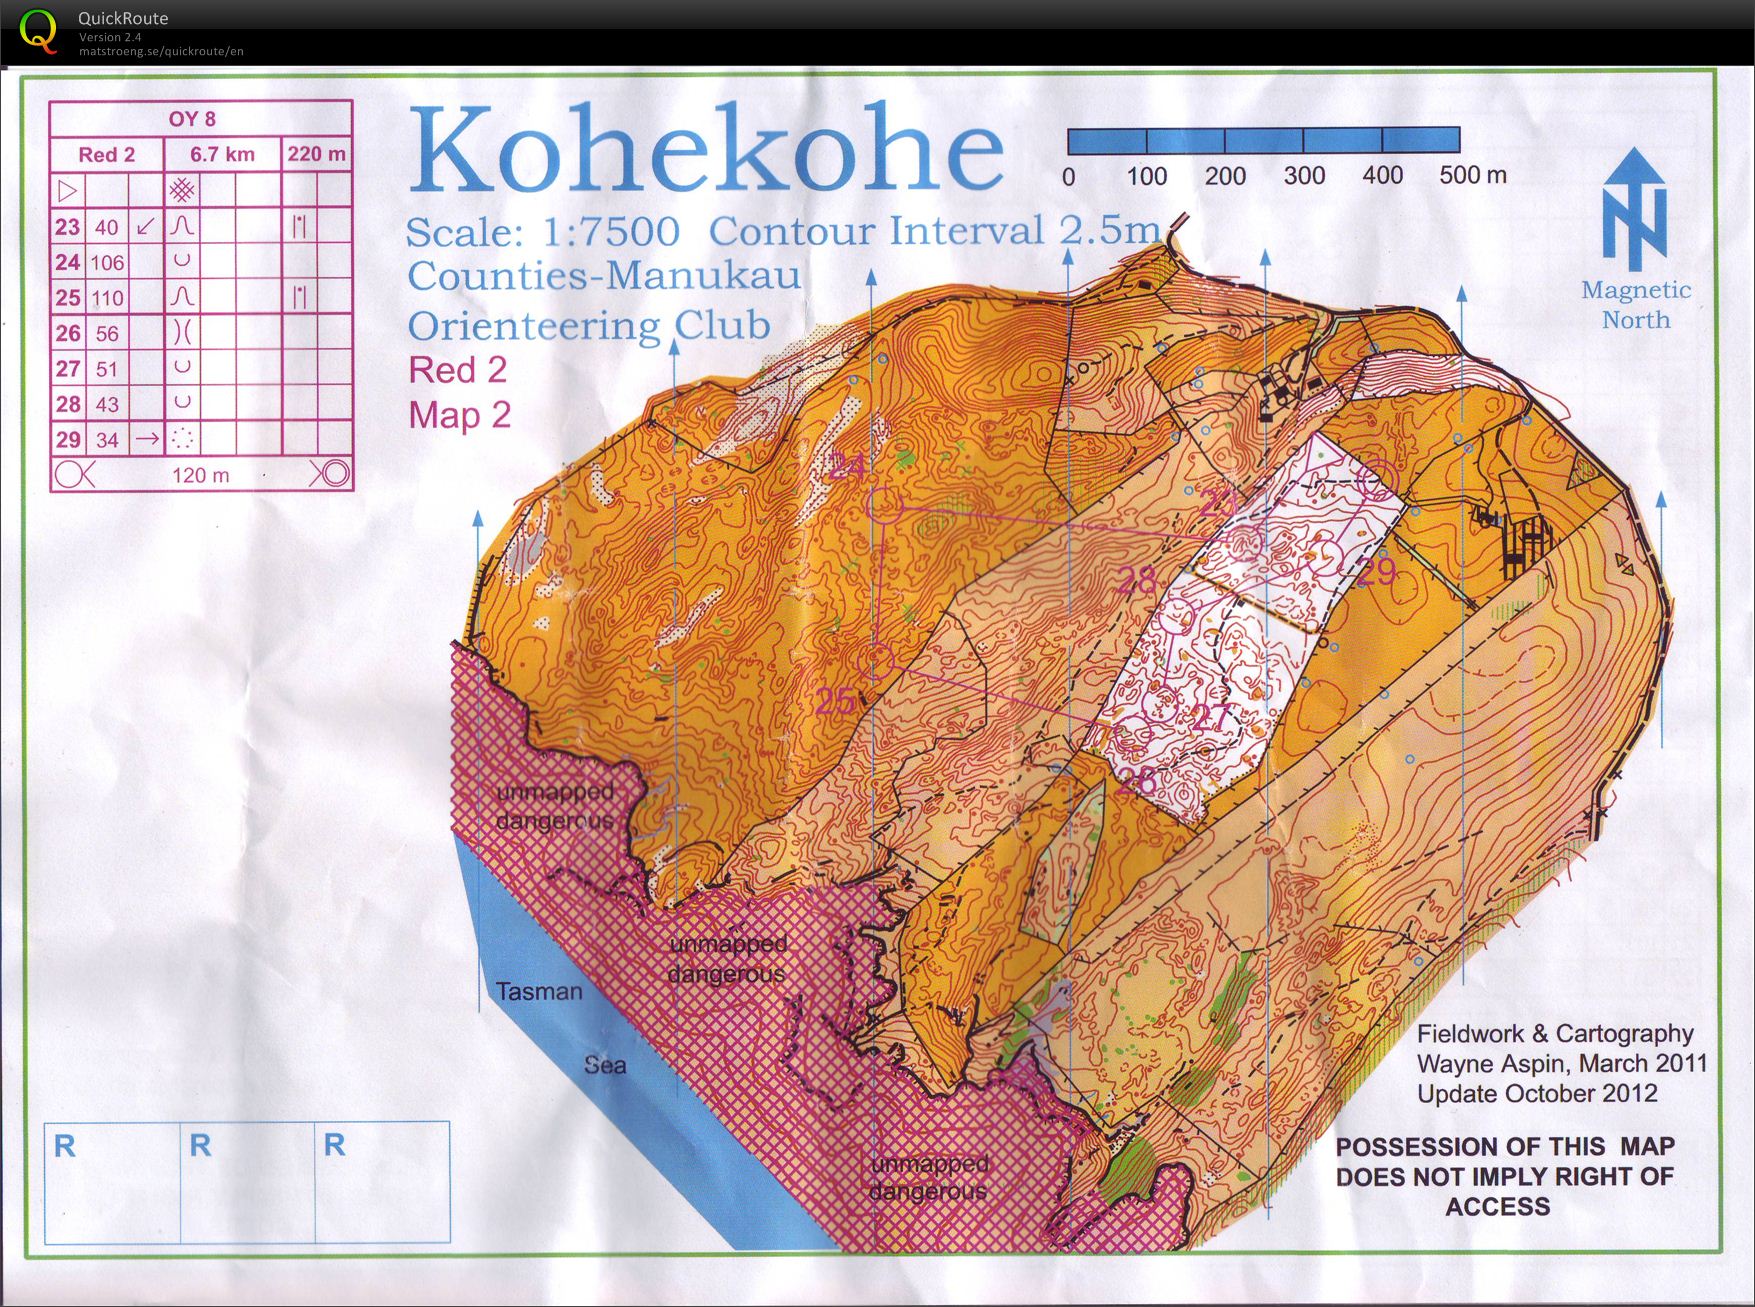 OY8 Kohekohe (part 2) (27-10-2012)